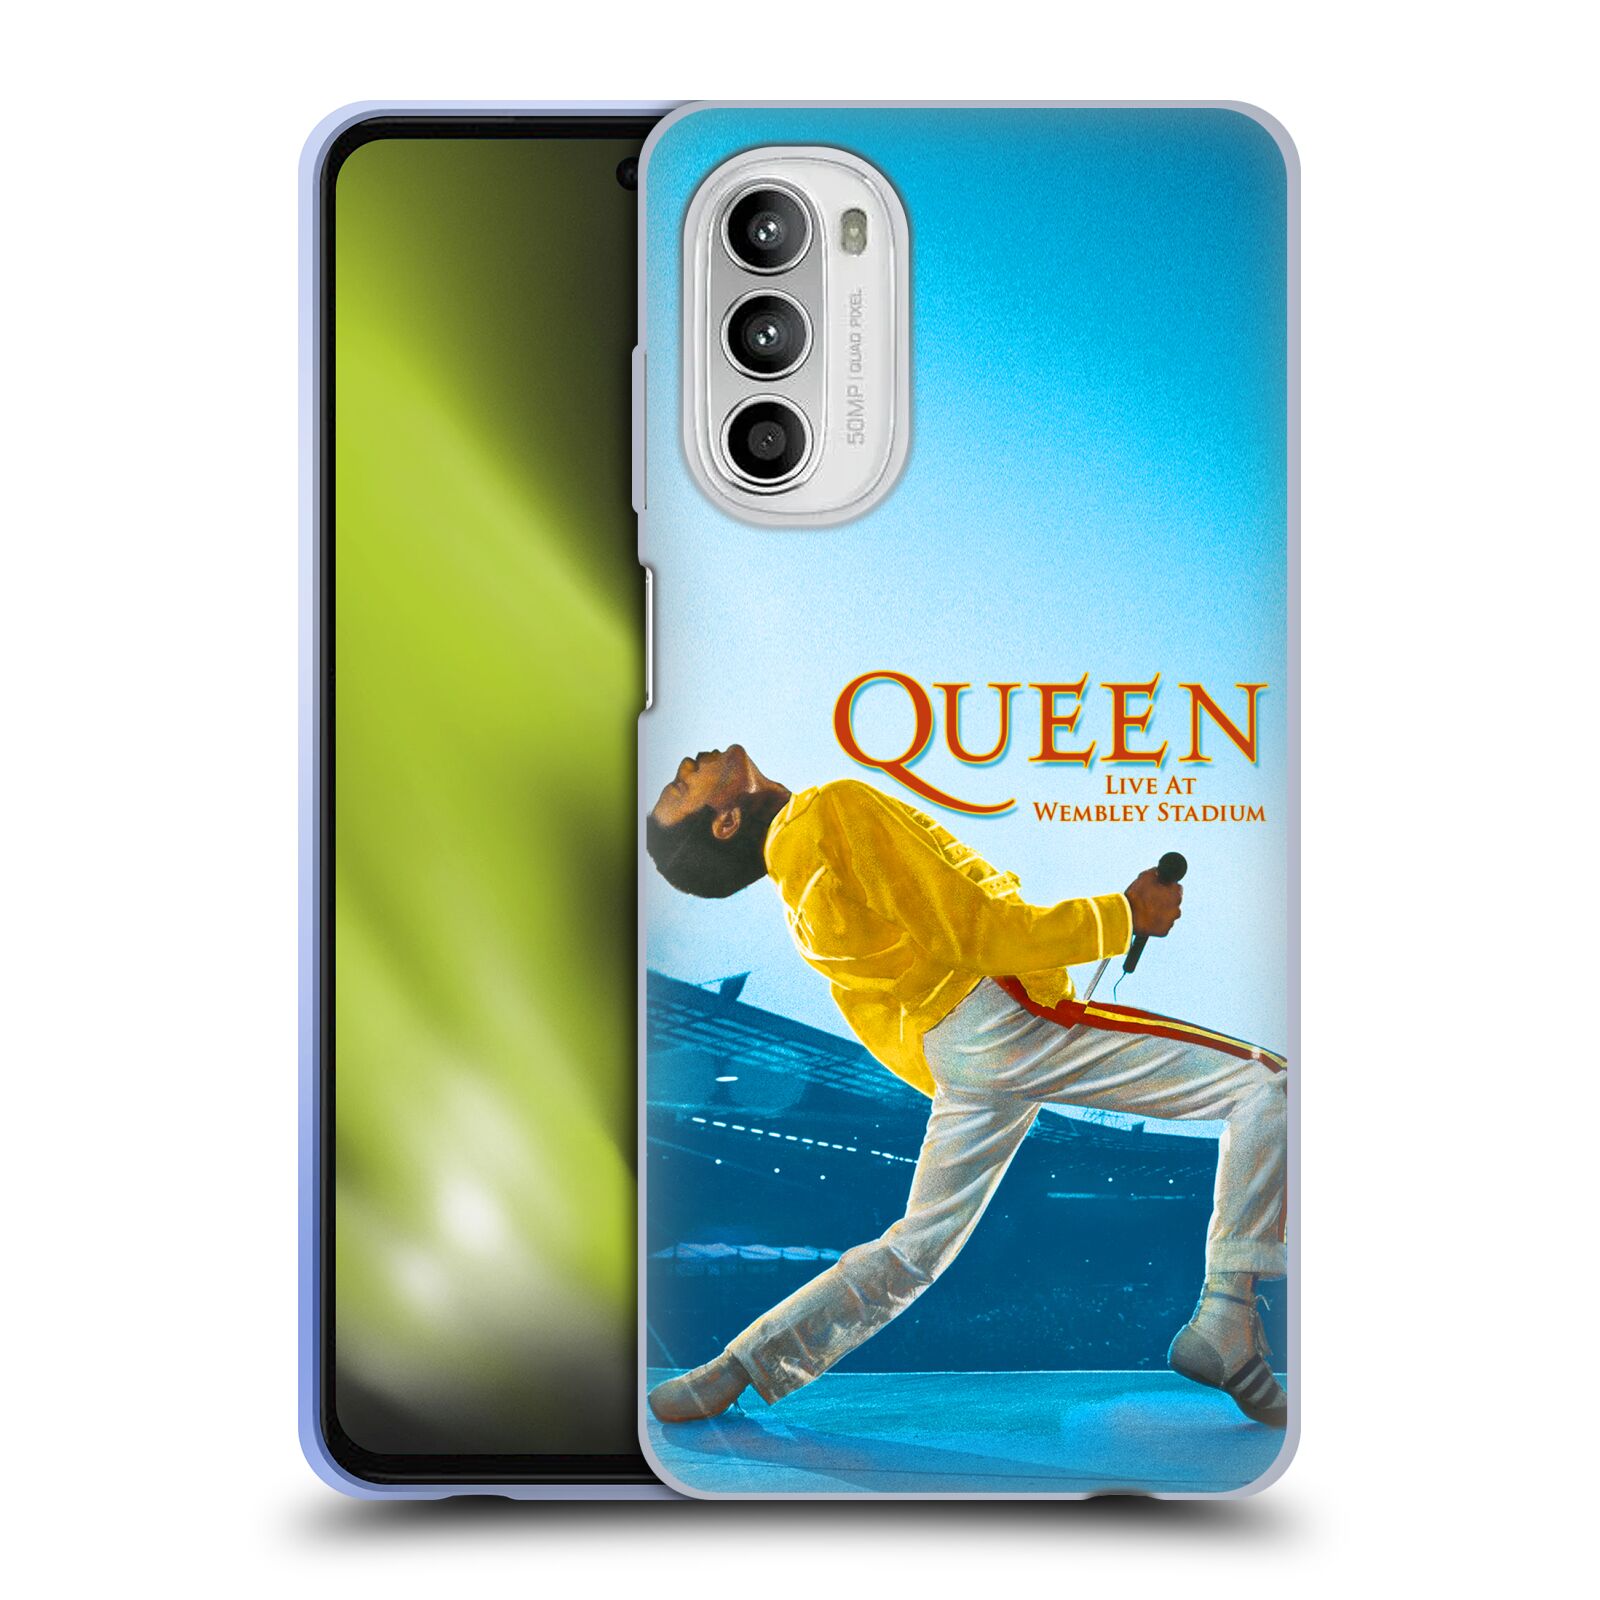 Silikonové pouzdro na mobil Motorola Moto G52 - Head Case - Queen - Freddie Mercury